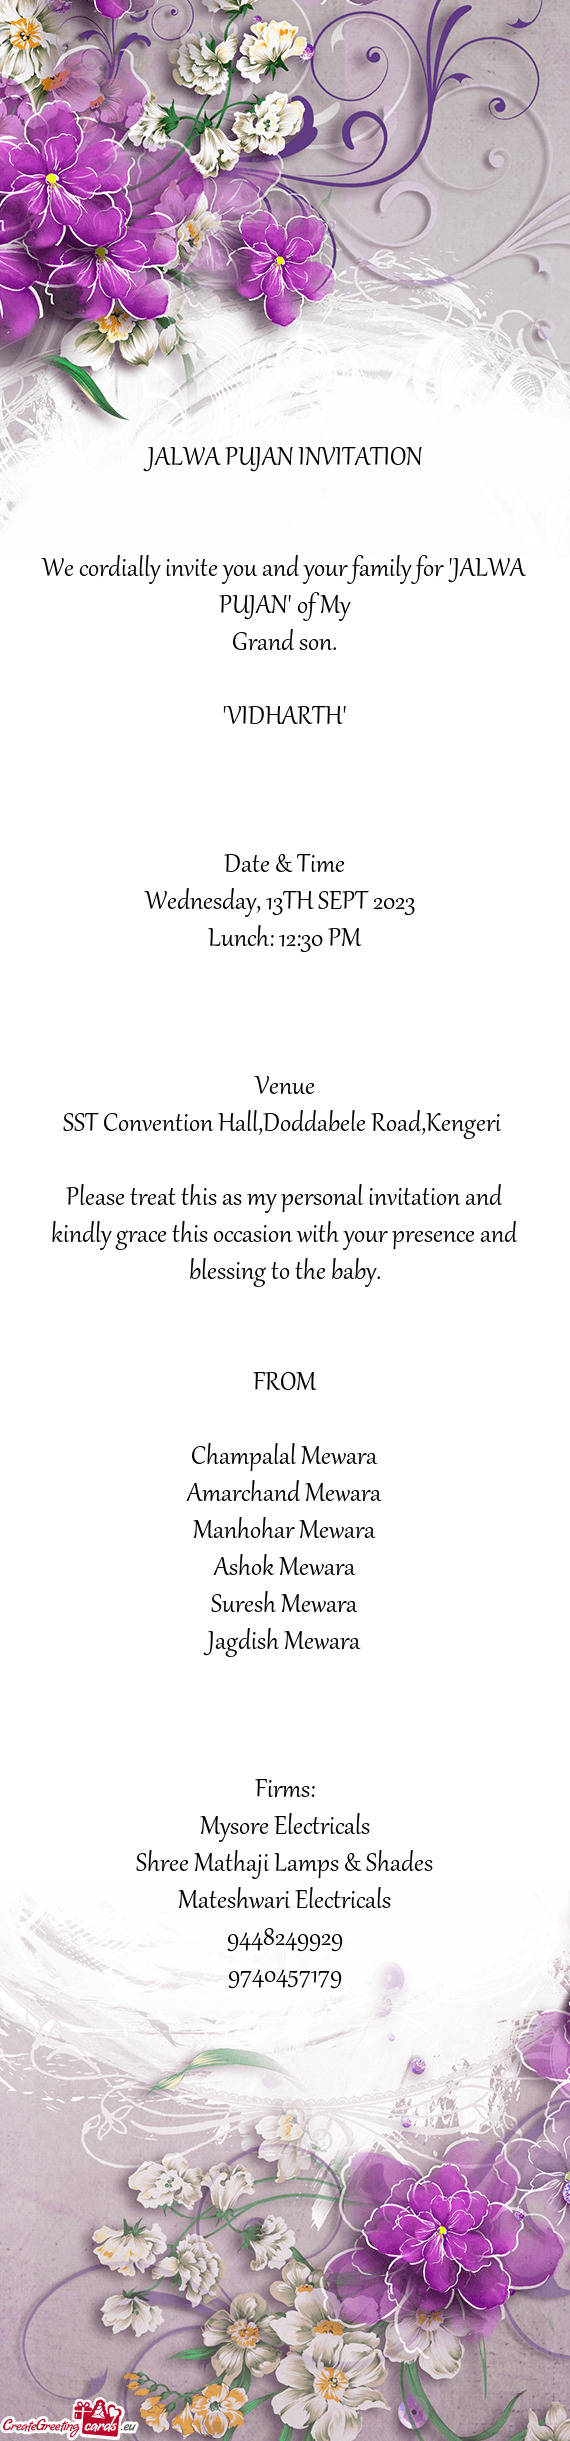 SST Convention Hall,Doddabele Road,Kengeri